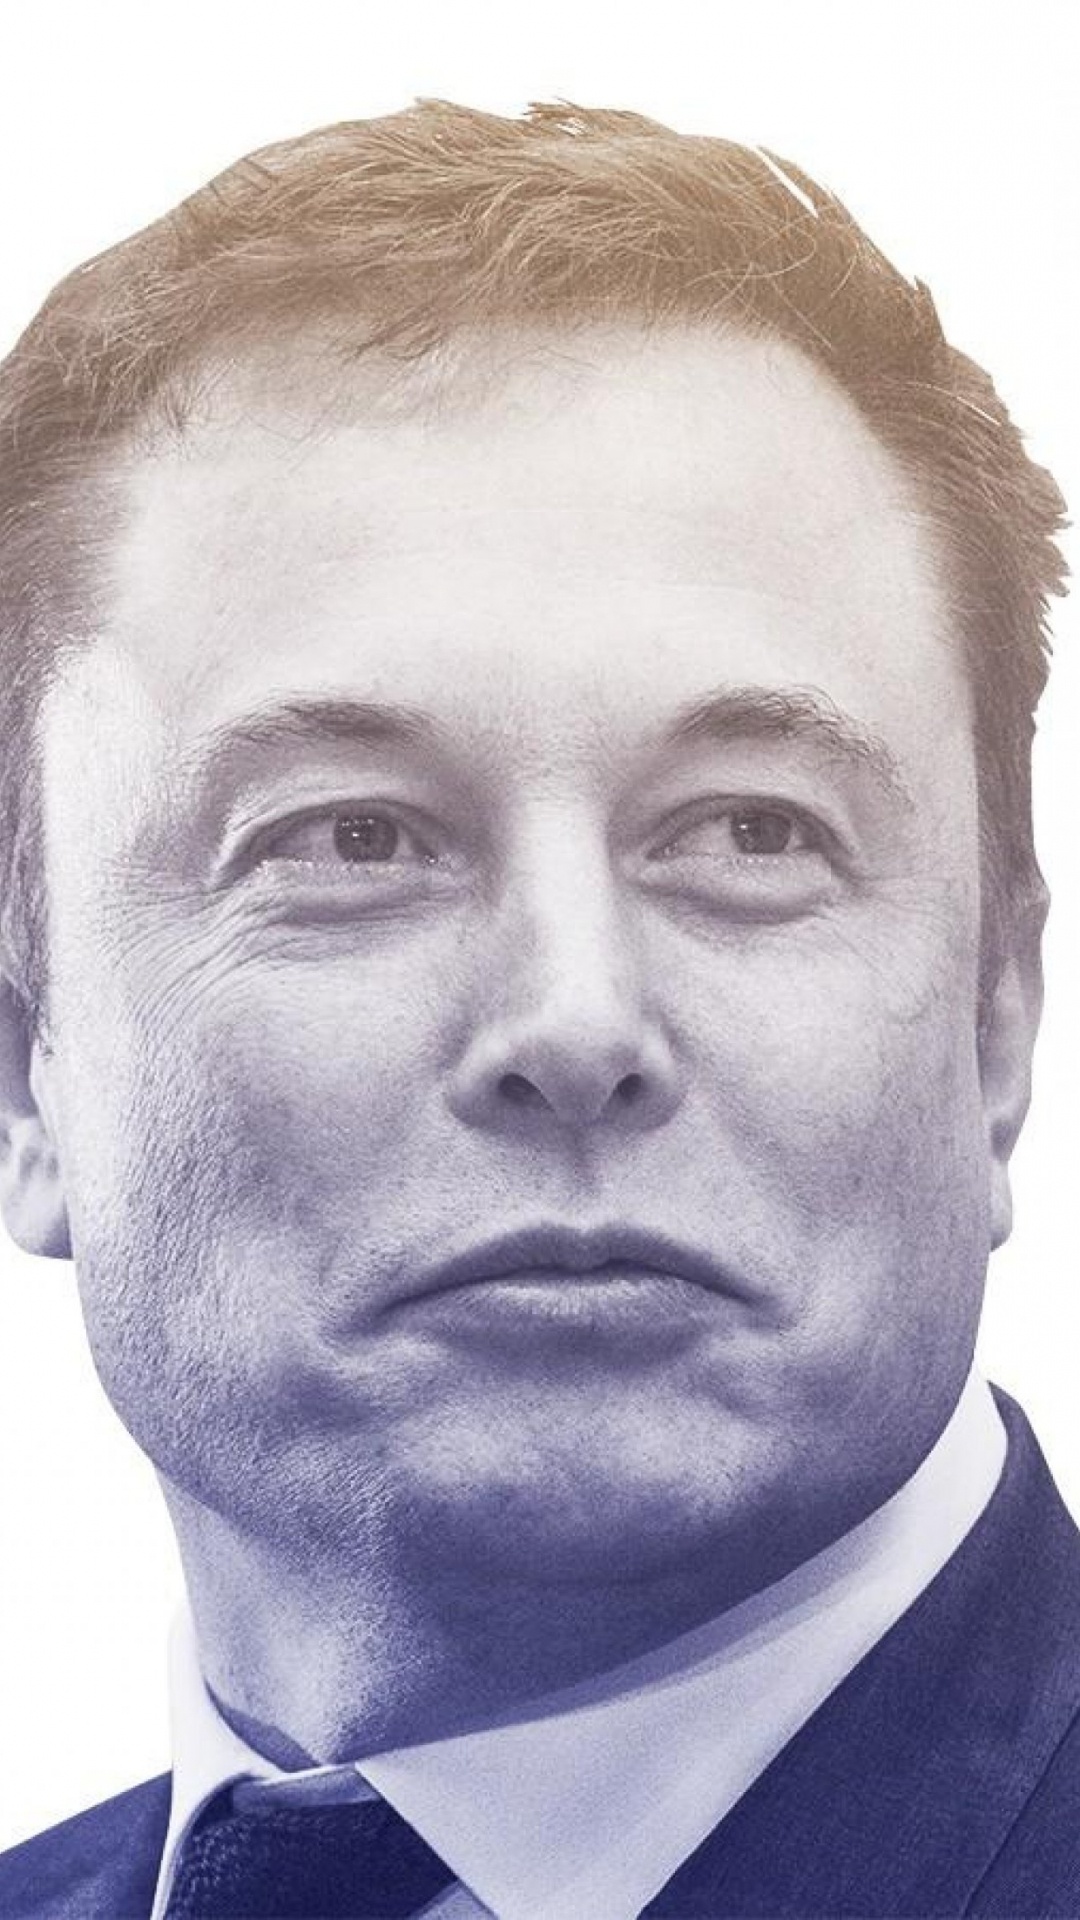 Elon Musk, Gesicht, Kopf, Kinn, Stirn. Wallpaper in 1080x1920 Resolution